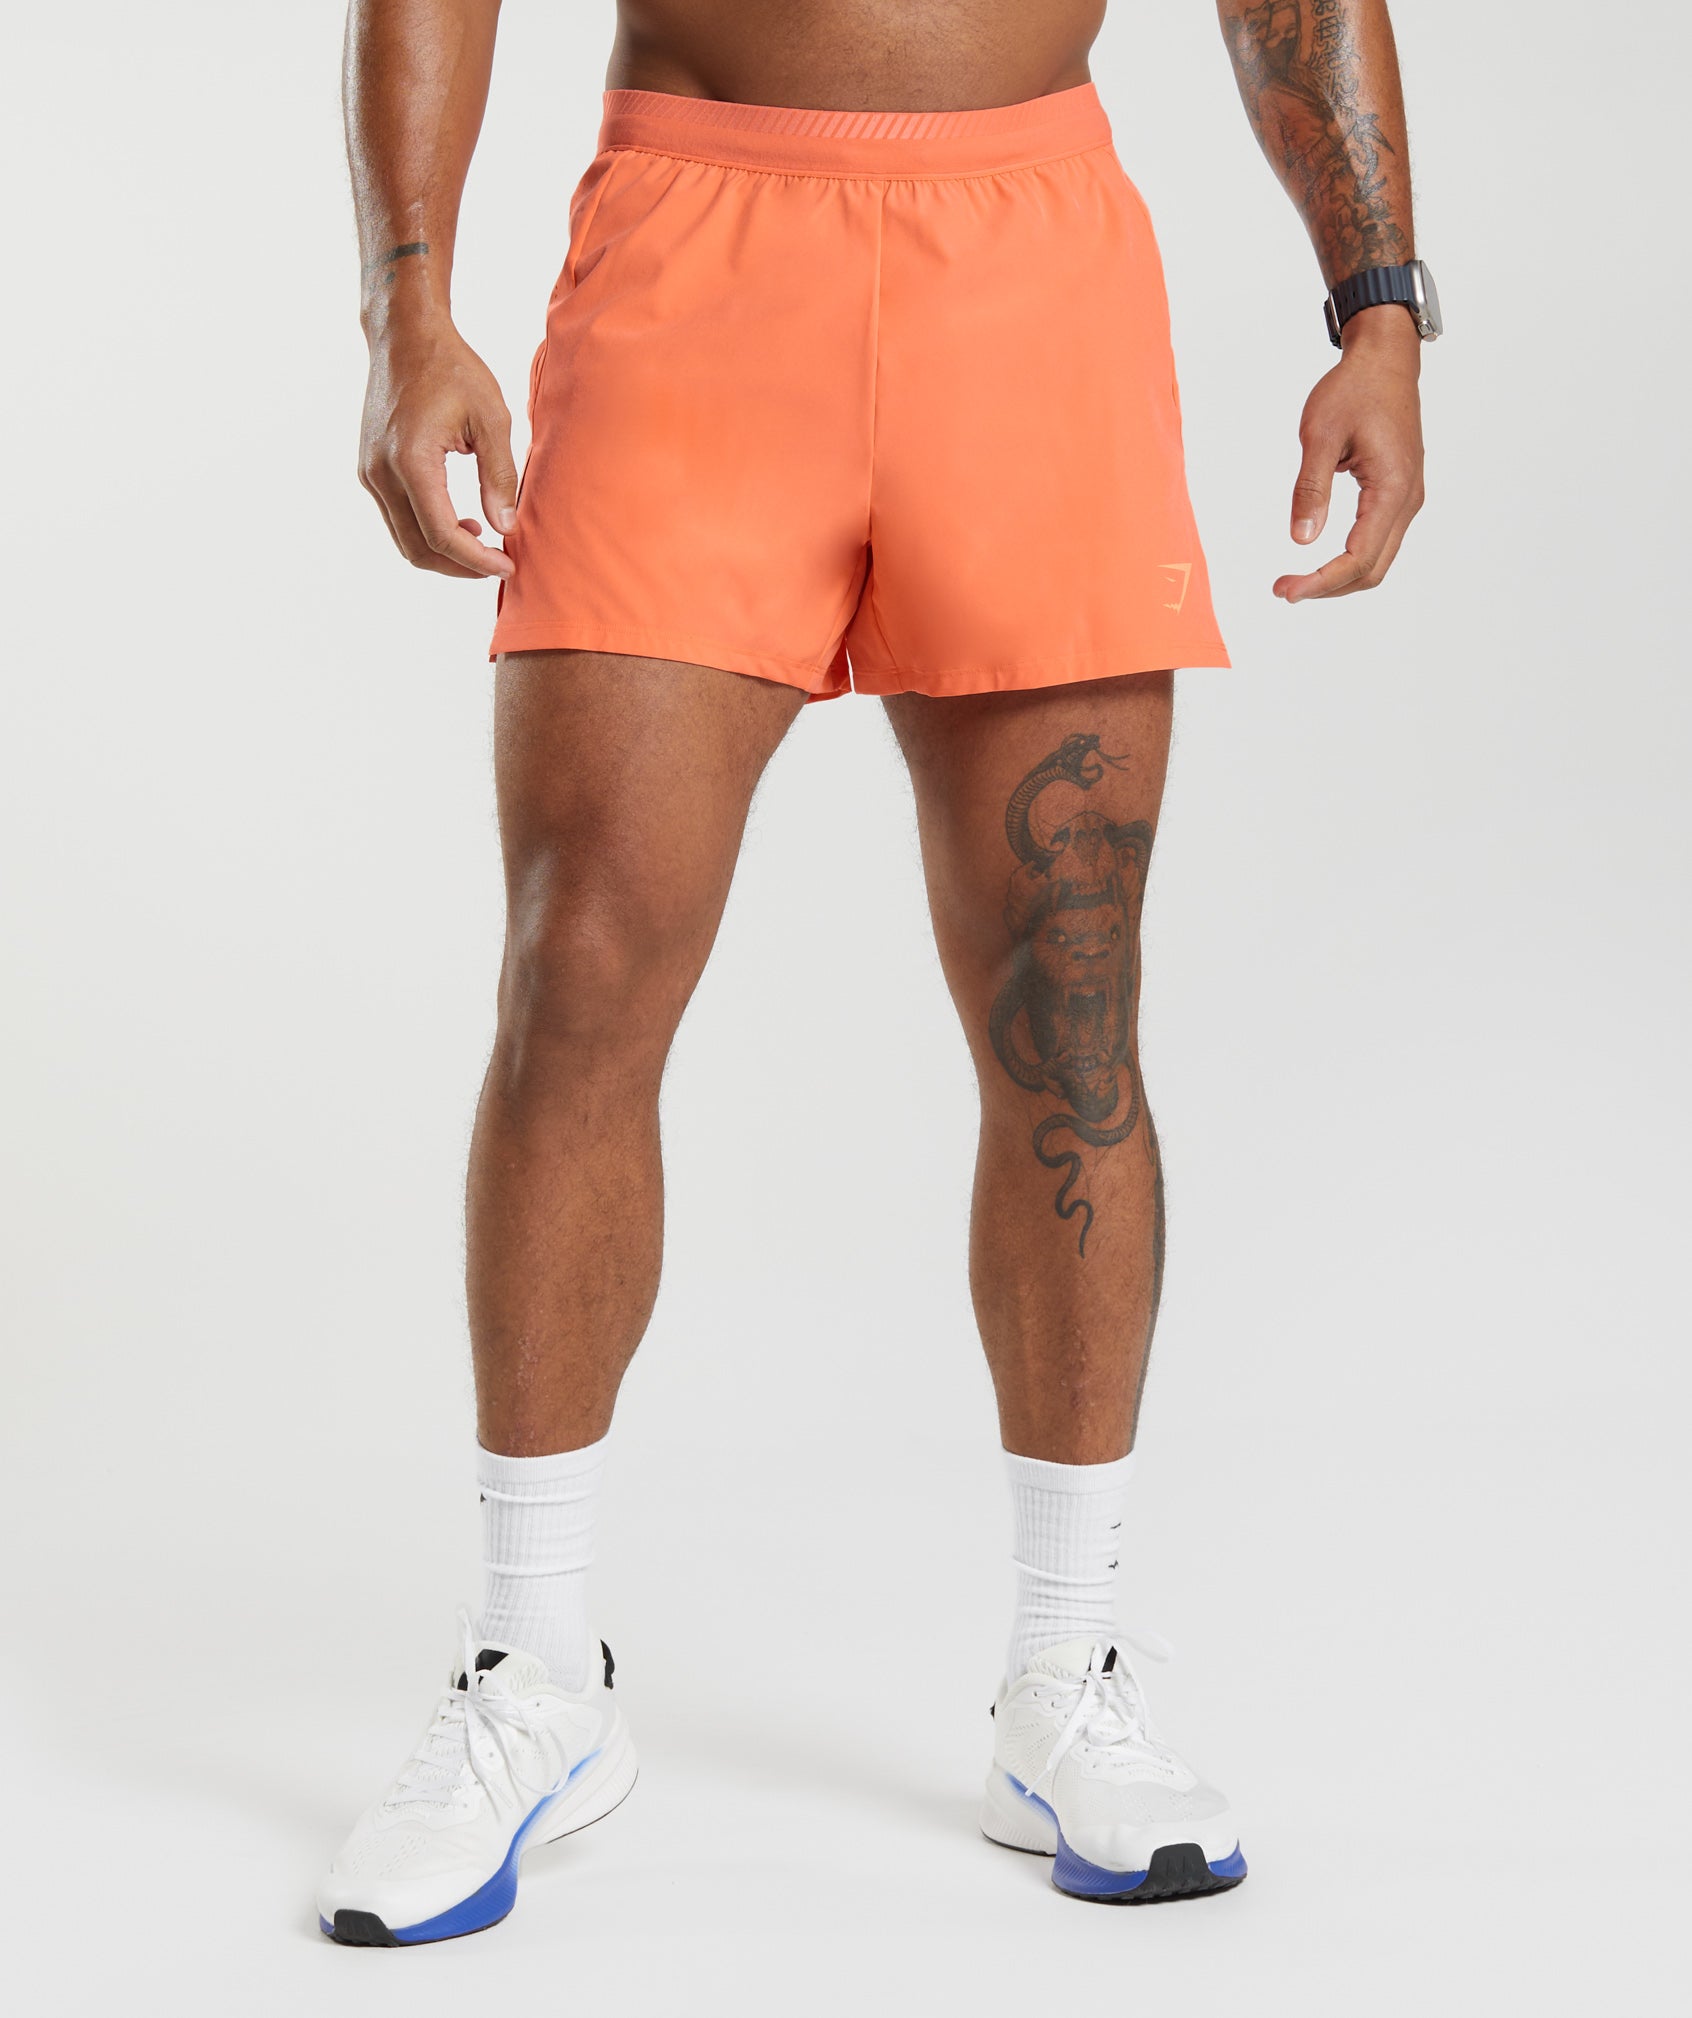 Apex Run 4" Shorts in Solstice Orange - view 1